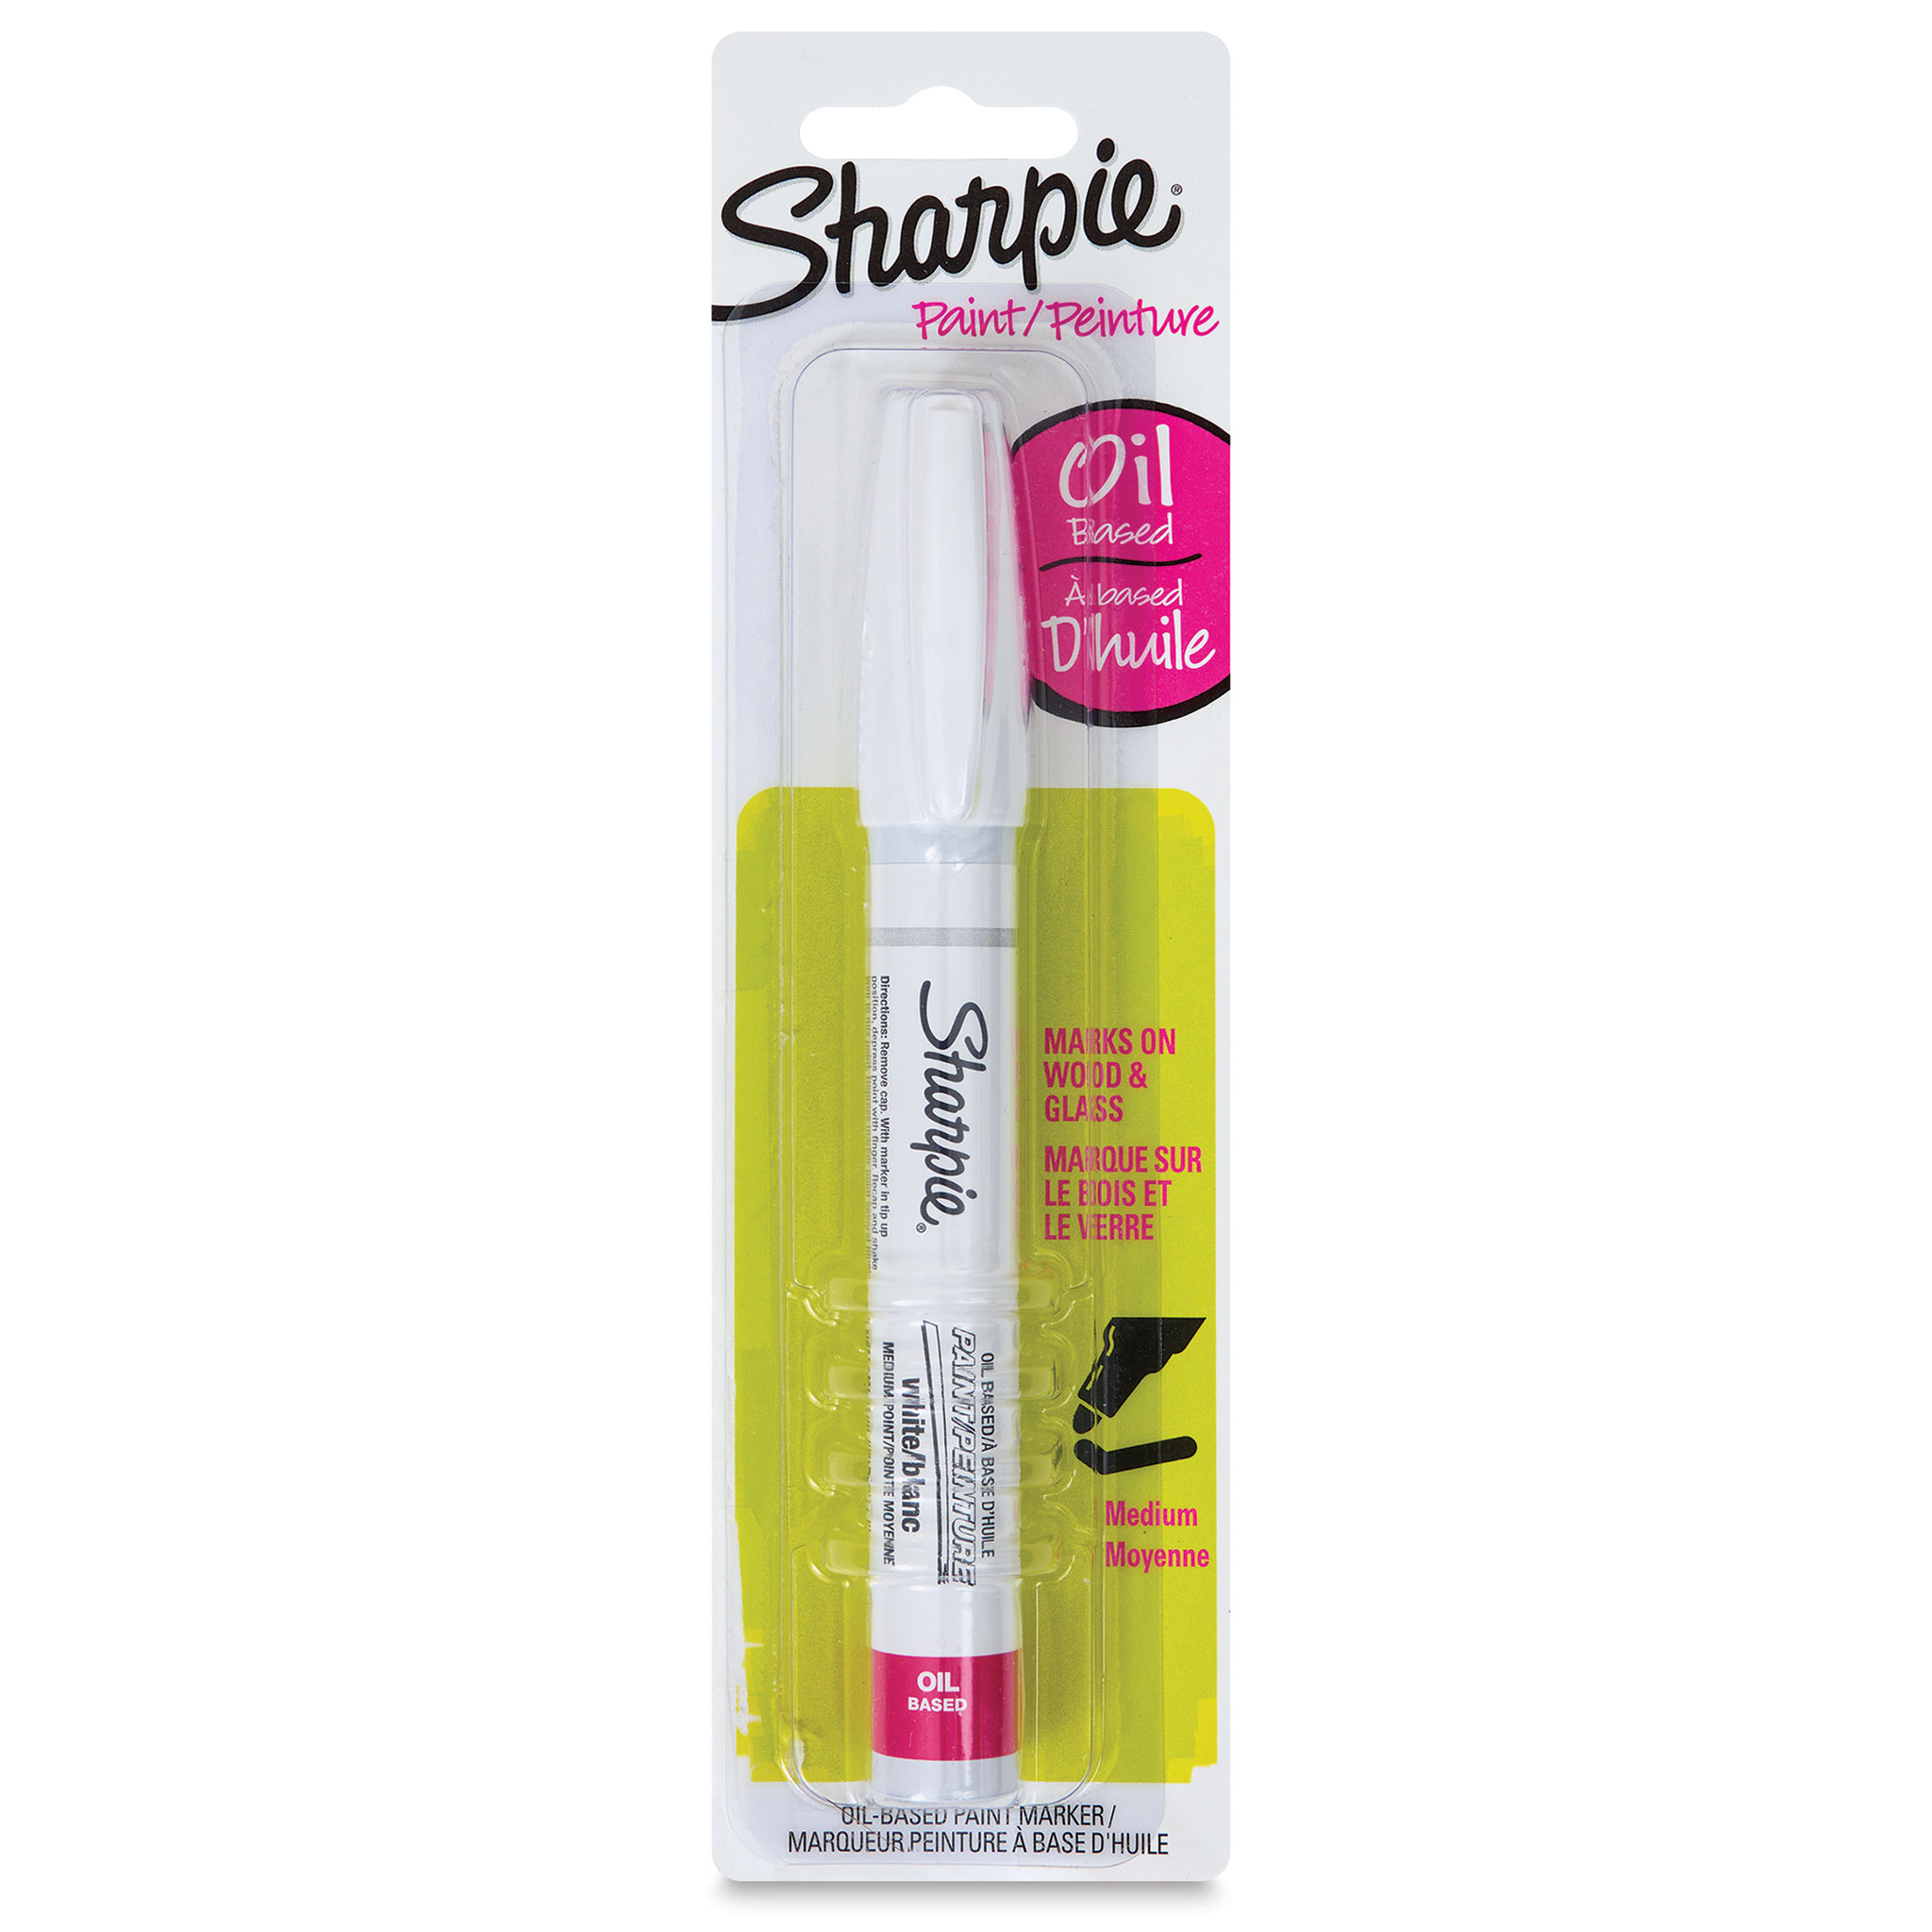 White Sharpie Paint Marker Medium Tip Pen Oil Based UK STOCK FAST